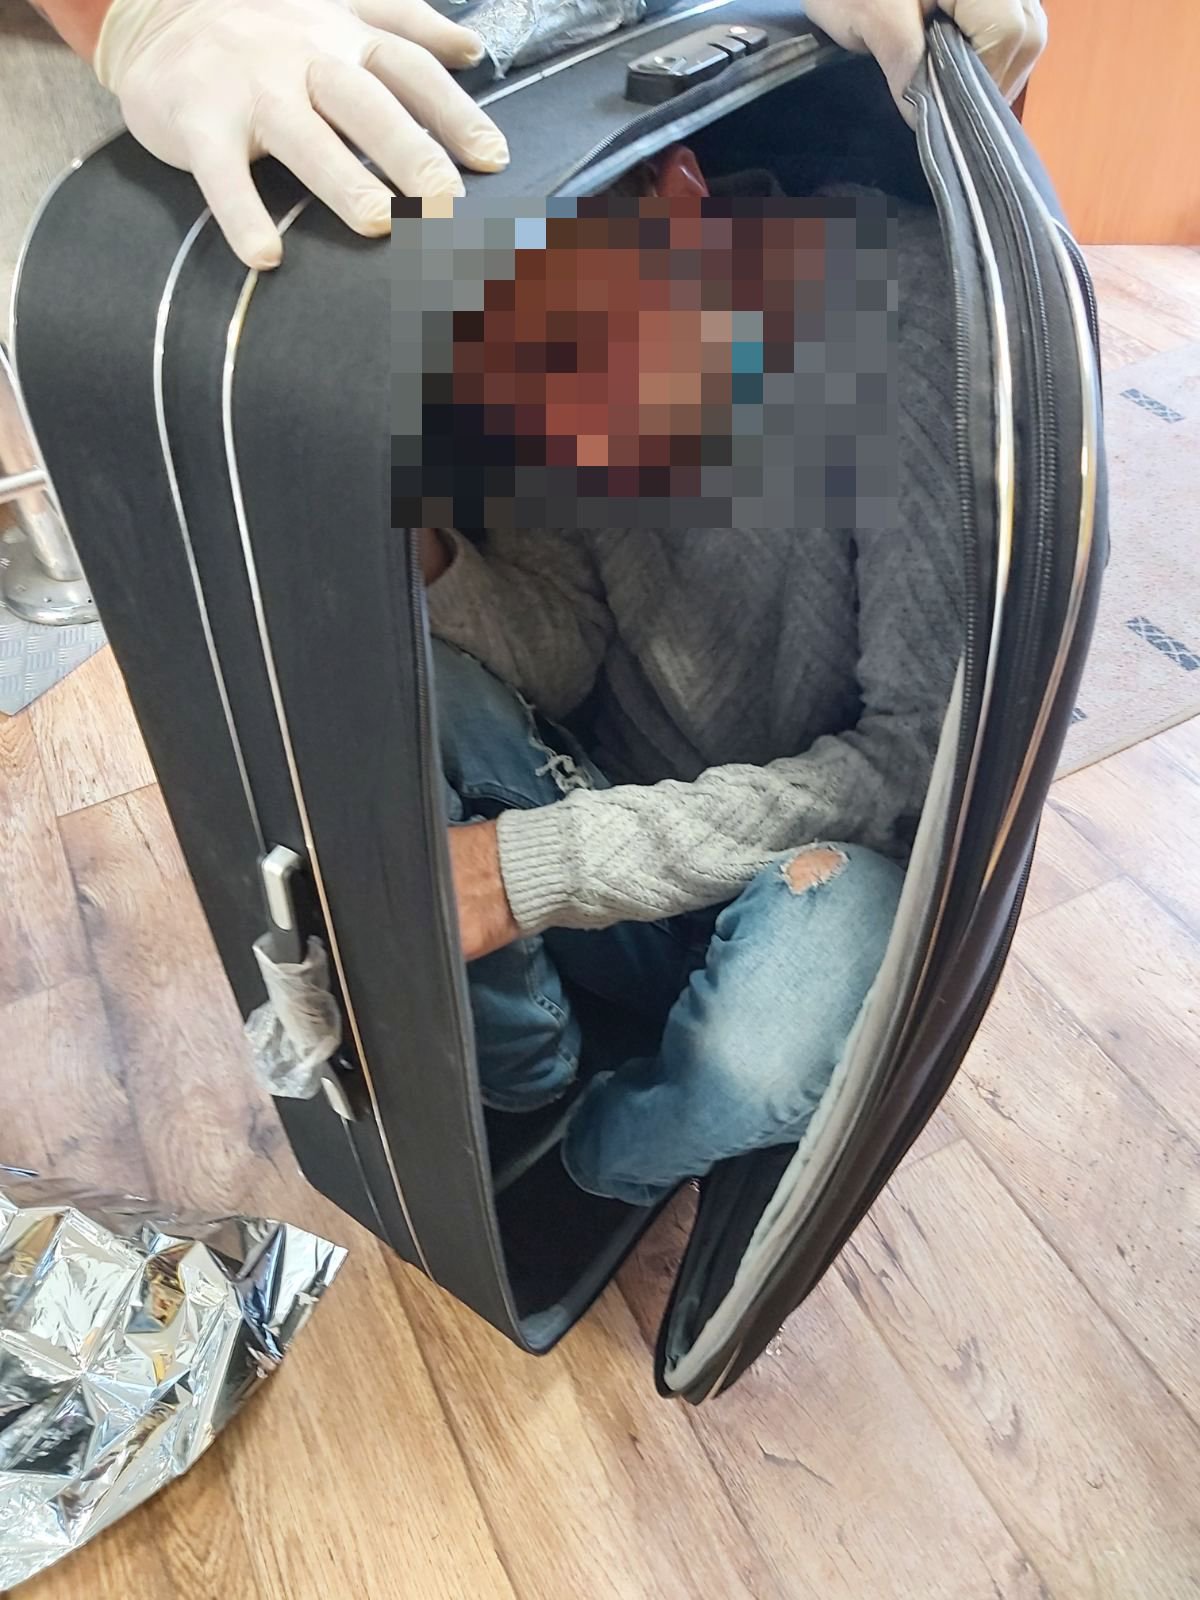 Κρυμμένος σε βαλίτσα εντοπίστηκε αλλοδαπός στο λιμάνι της Μυτιλήνης